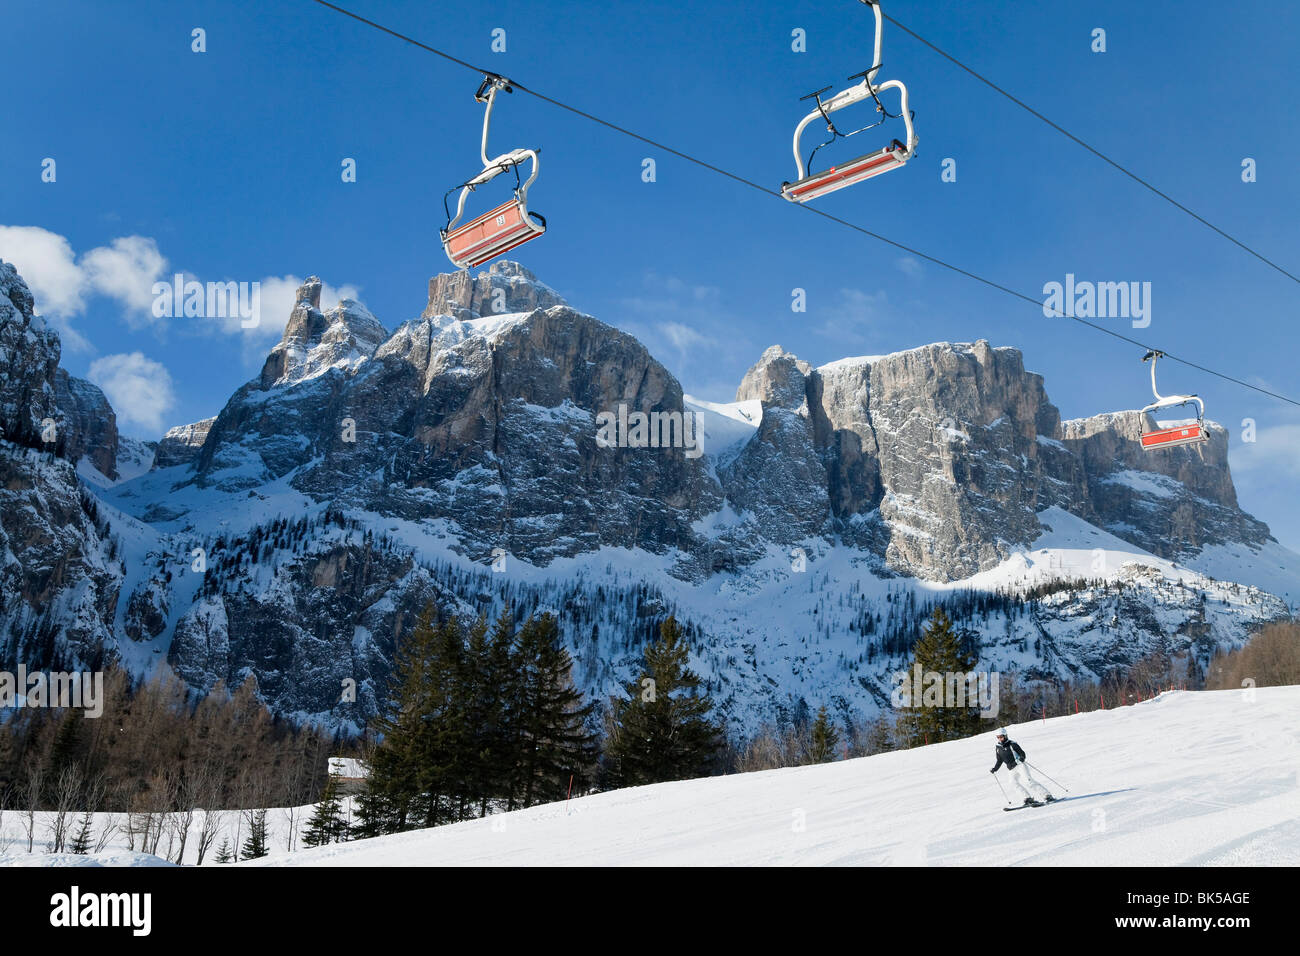 Sella Ronda ski area, Val Gardena, Sella Massif range of mountains under winter snow, Dolomites, South Tirol, Italy Stock Photo